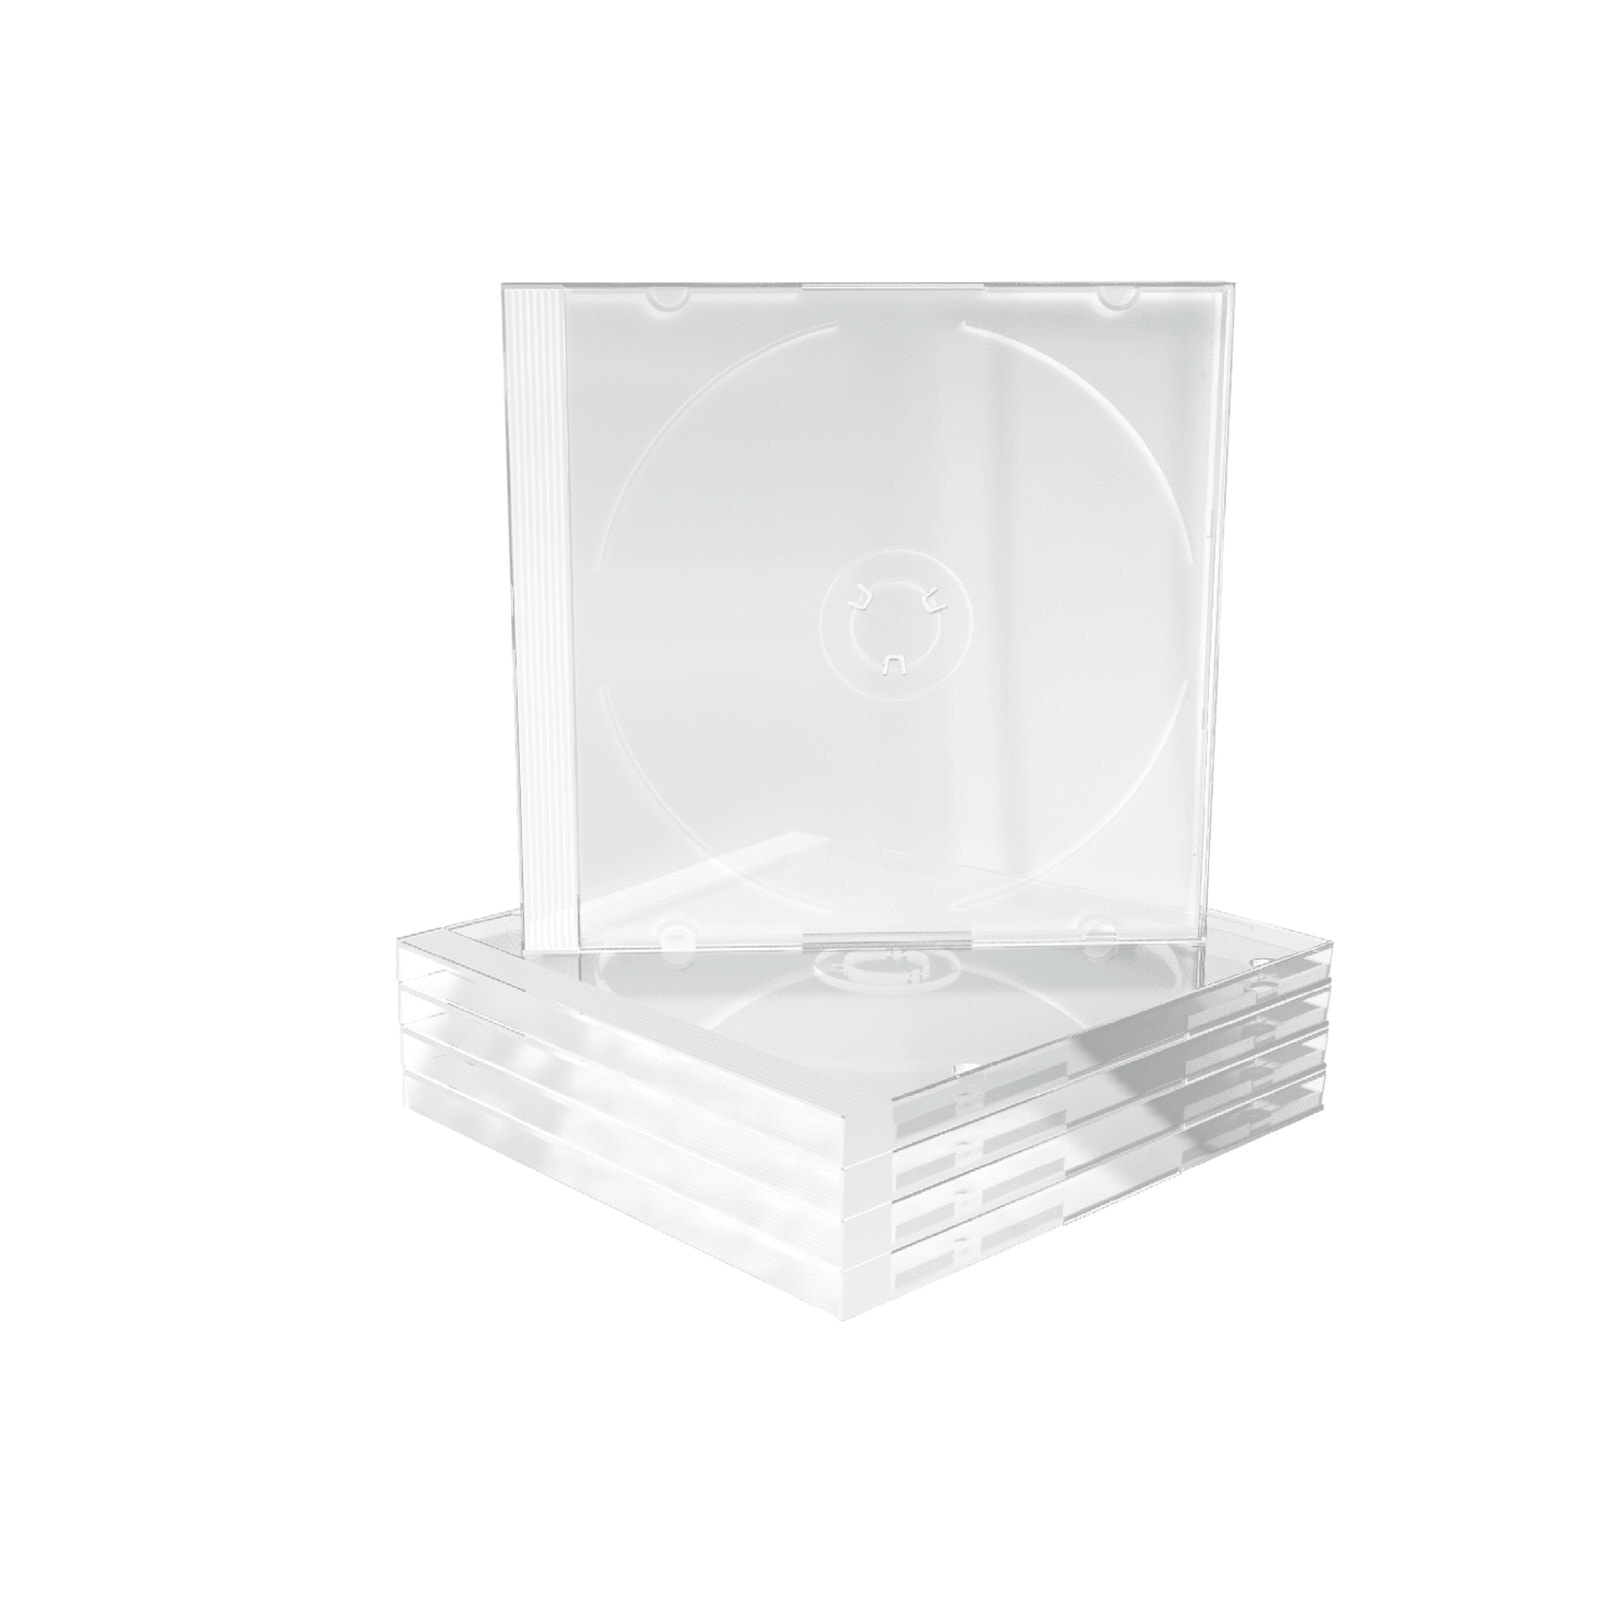 MediaRange BOX24 чехлы для оптических дисков Стандартная упаковка 1 диск (ов) Прозрачный